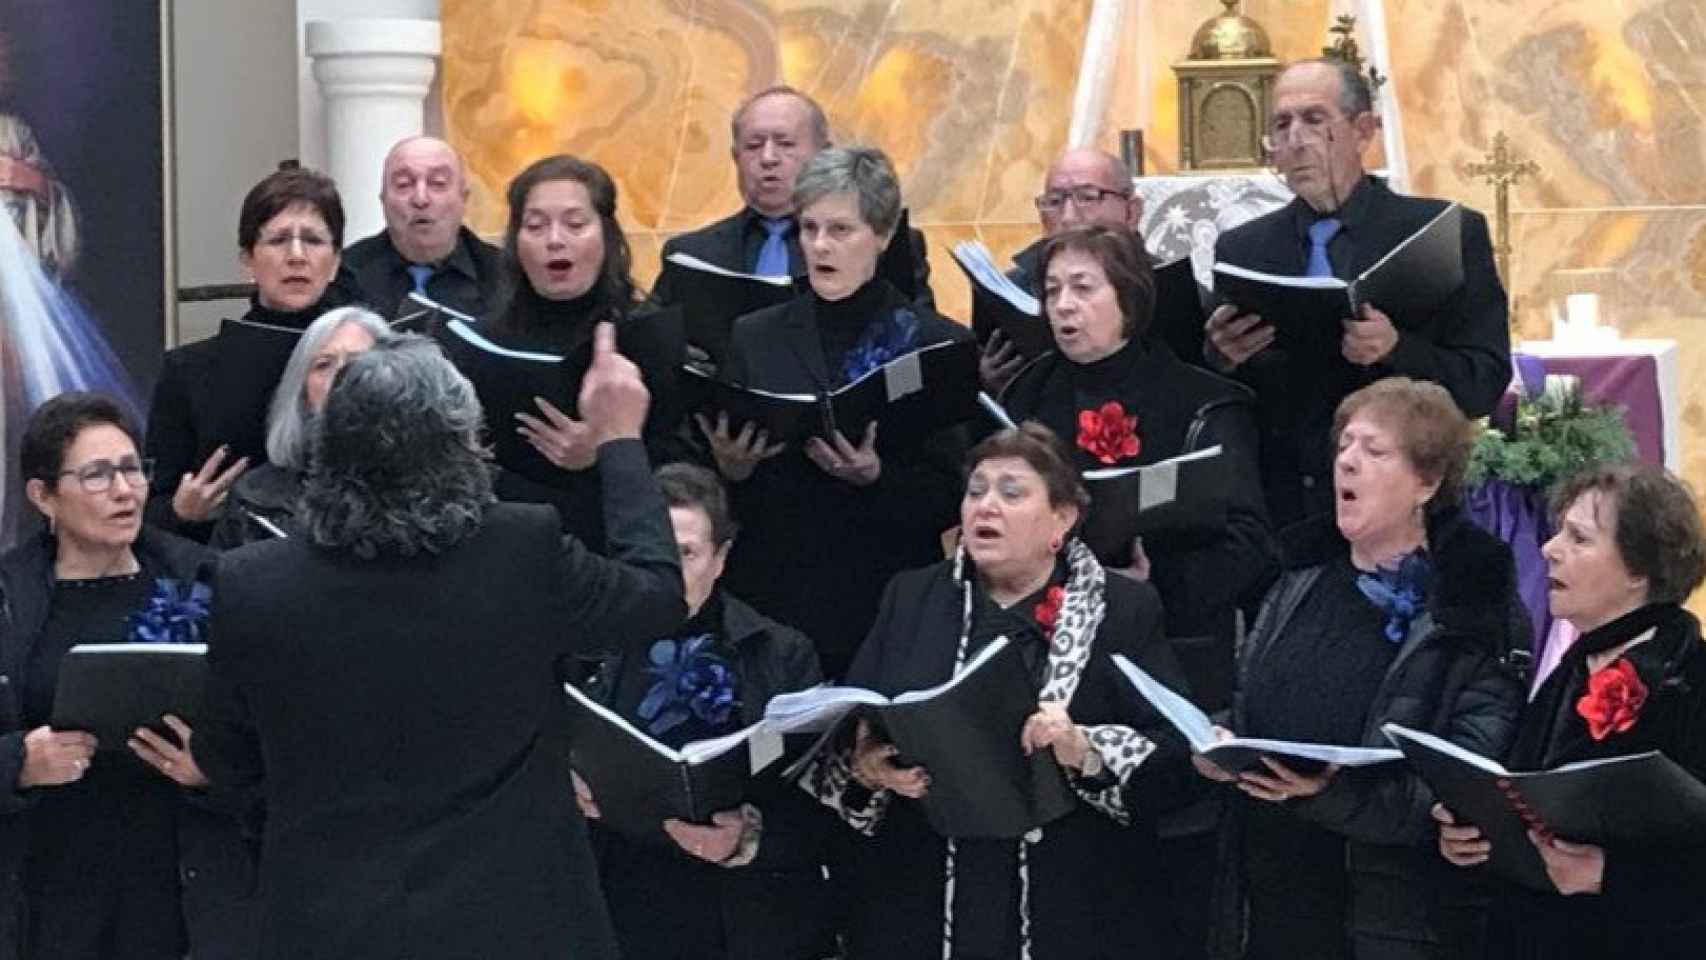 Una fotografía del Coro de Fuentearmegil cantando.